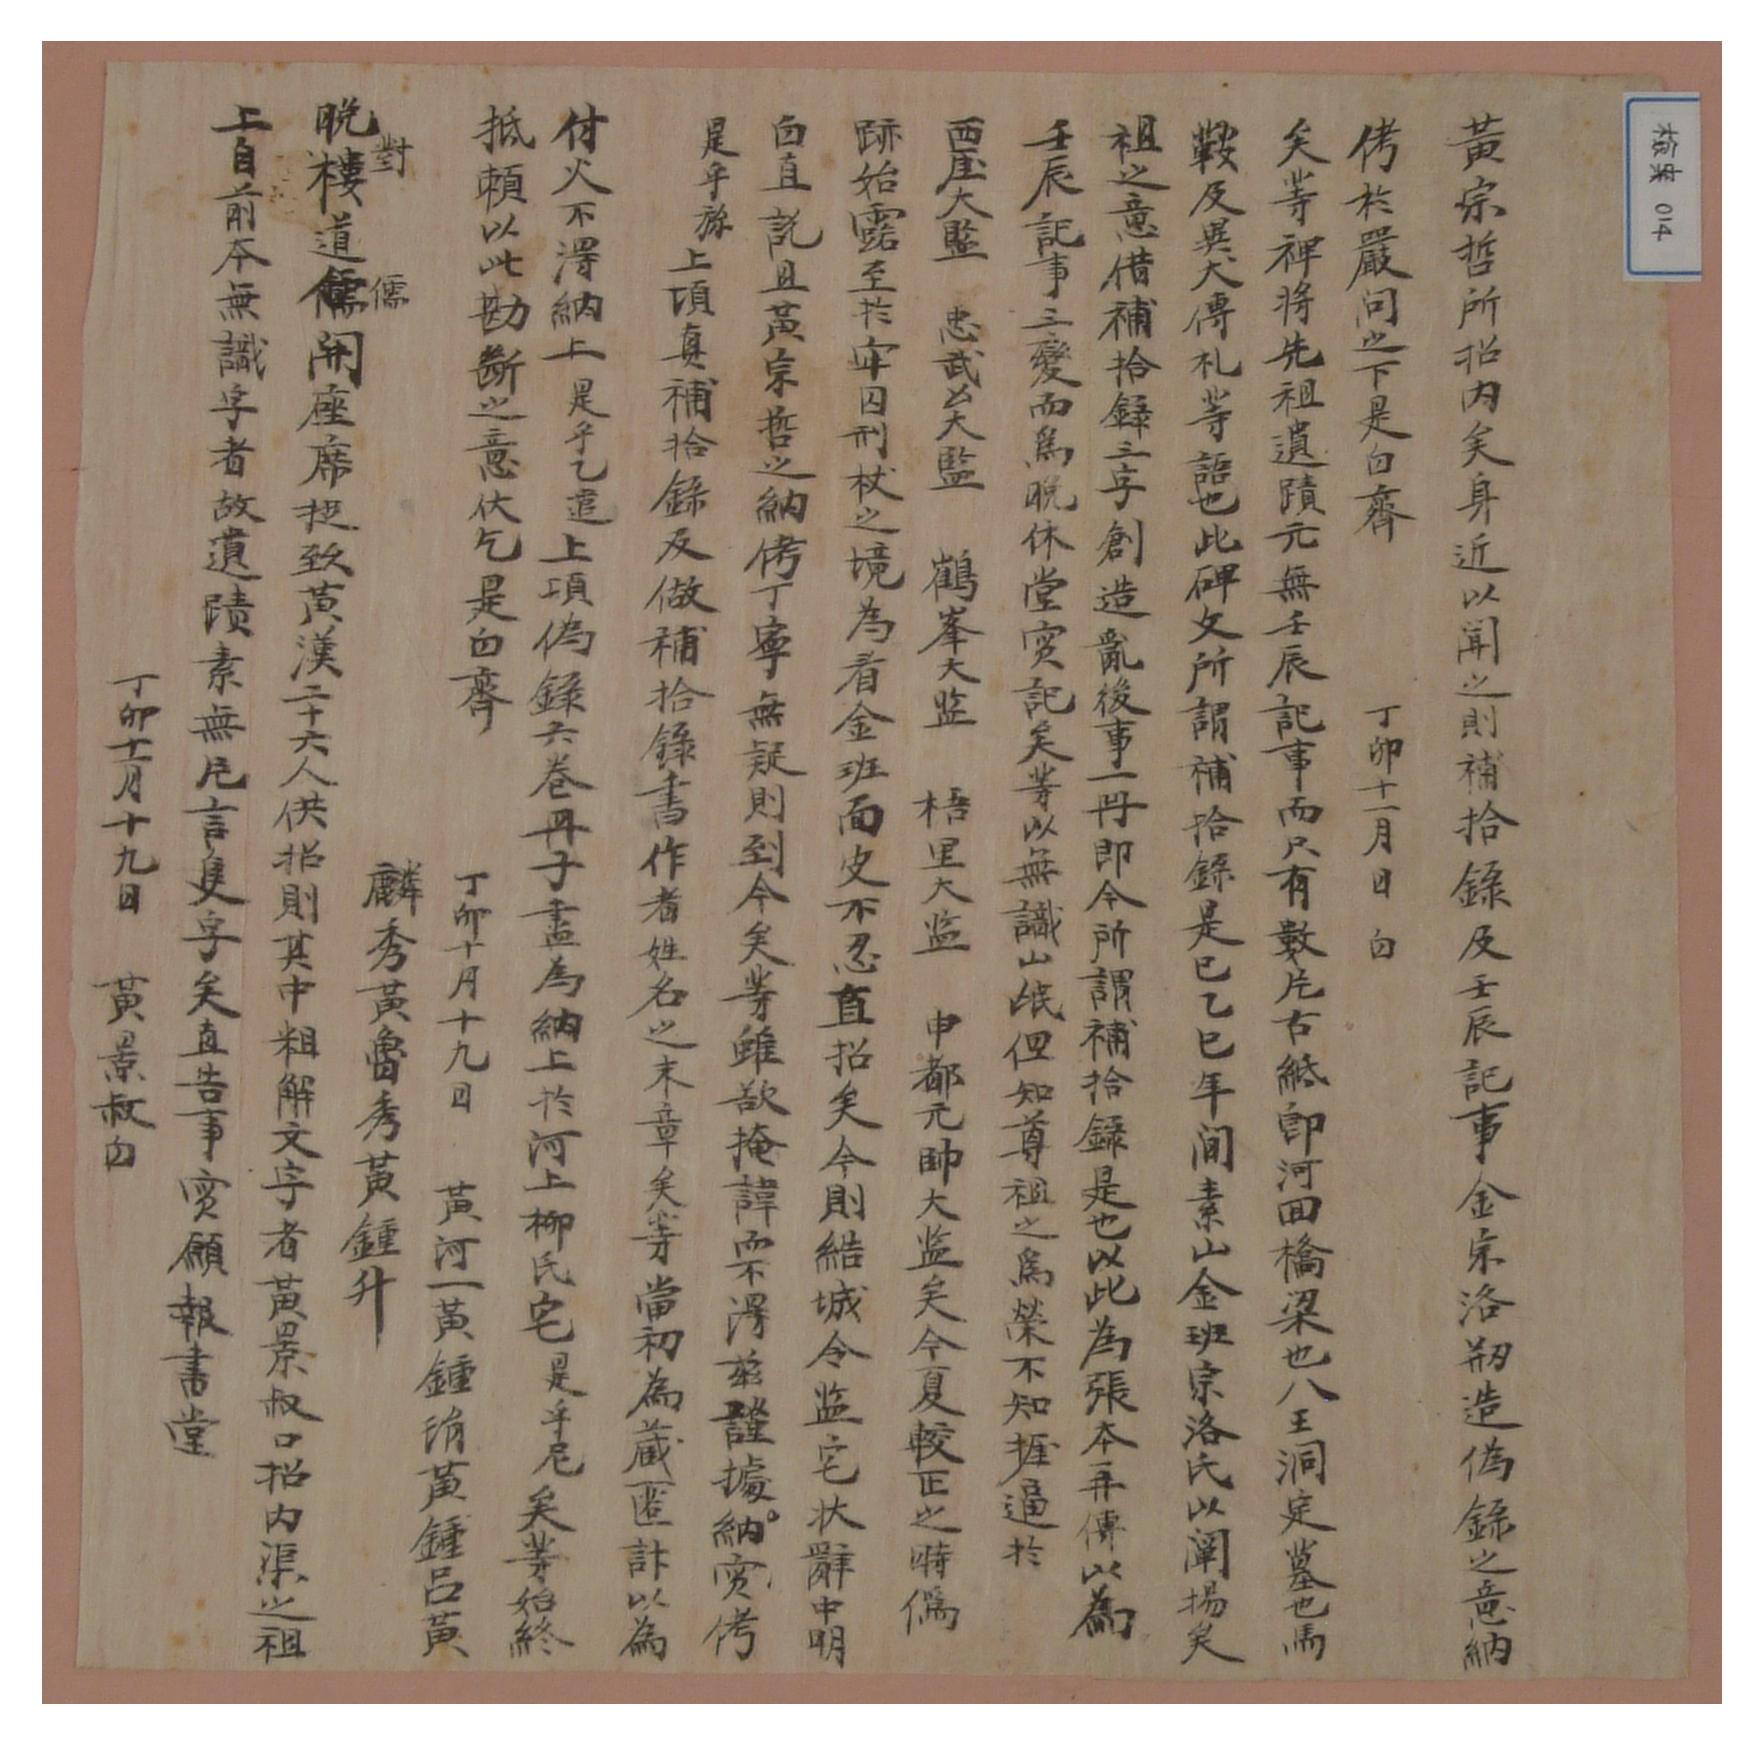 1826년12월 박만주가 작성하여 미상인에게 준 명문